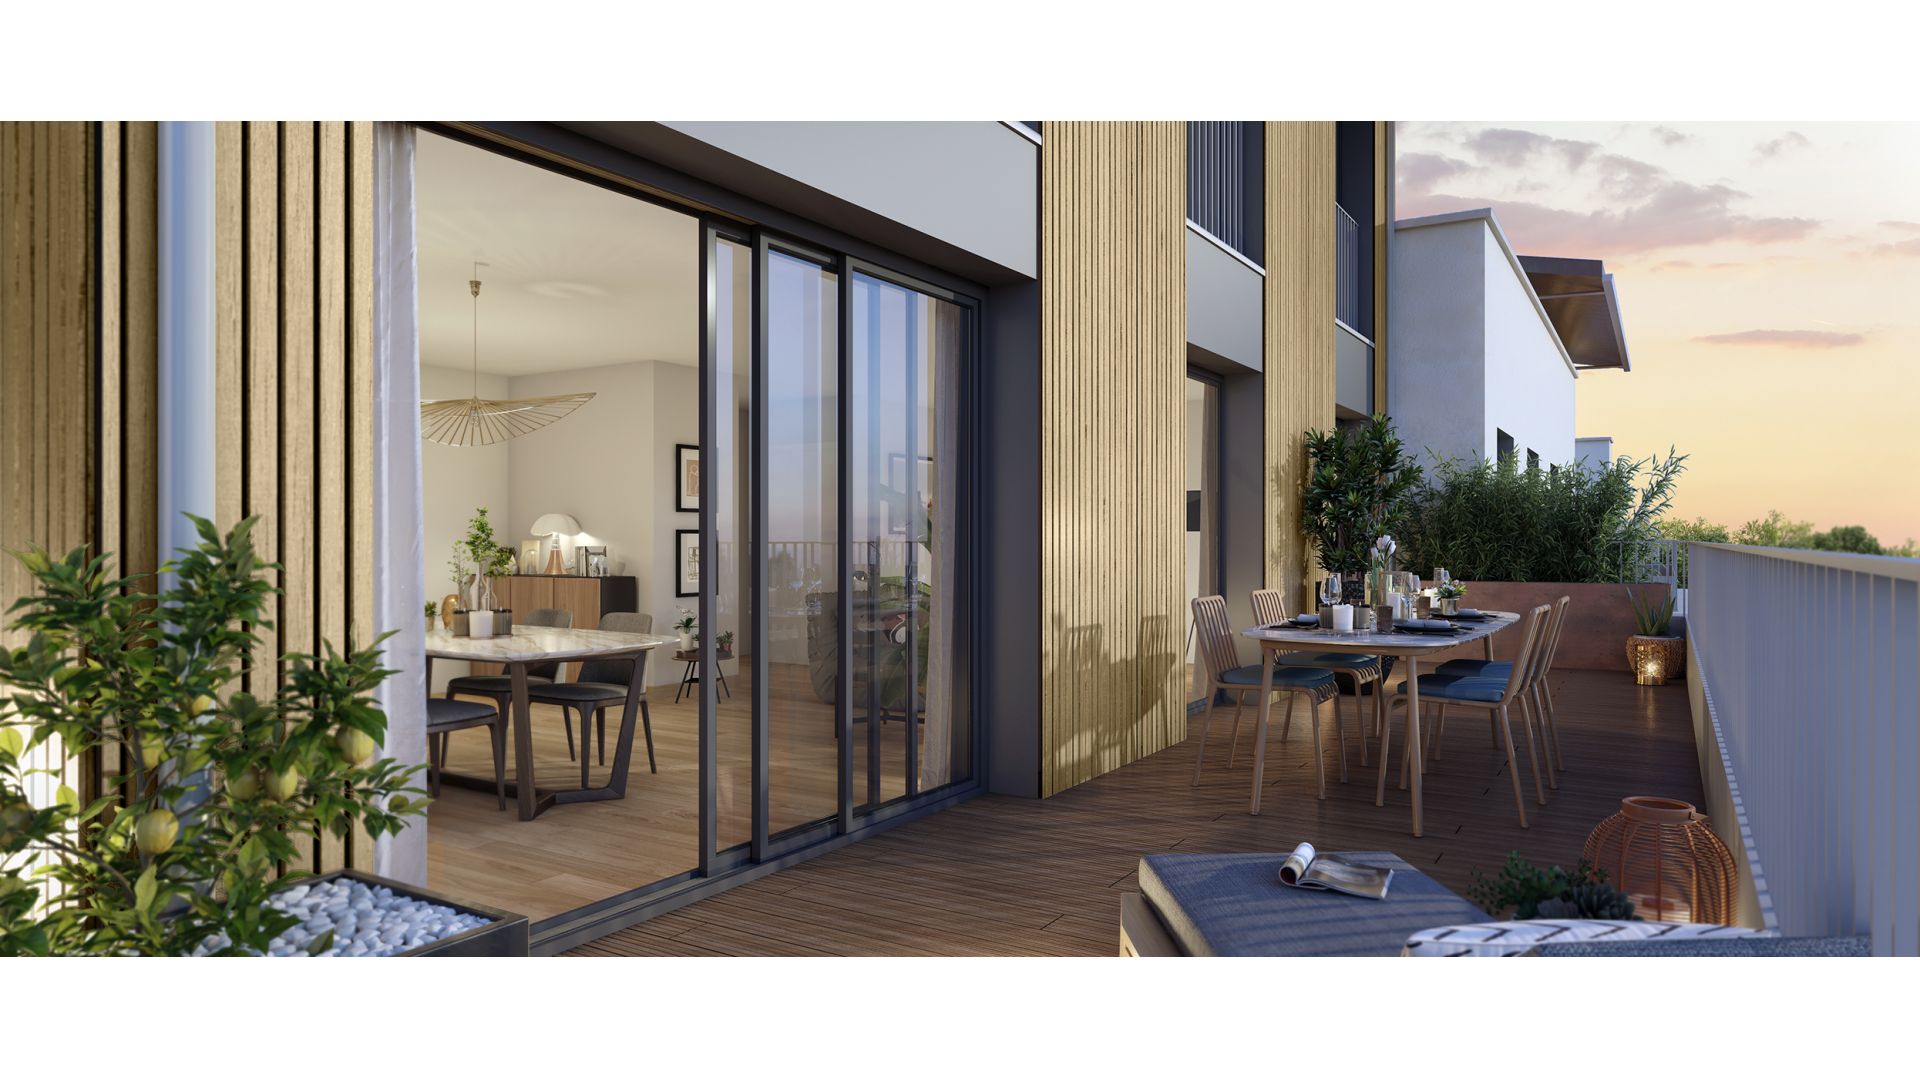 Greencity Immobilier - Résidence Le Boréal - 95380 Louvres - achat immobilier neuf - appartements et villas  du T2 au T5 Duplex - vue terrasse